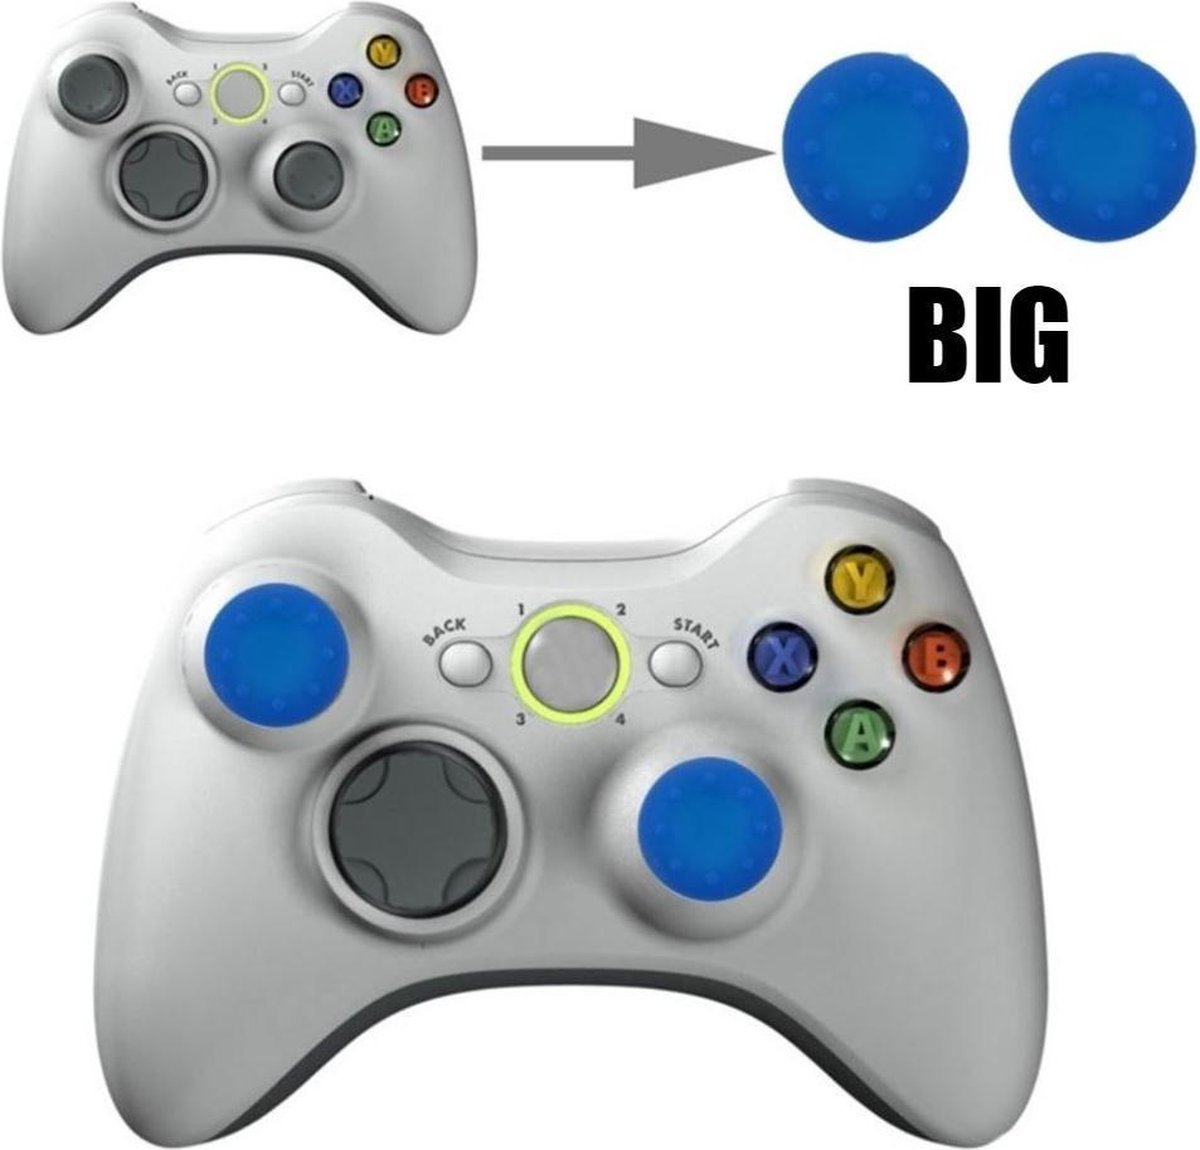 Thumb grips - Controller Thumbgrips - Joystick Cap - Thumbsticks - Thumb Grip Cap geschikt voor PS5, PS4, Switch Pro, Steamdeck en Xbox X/S - 2 stuks Groot 8 dots extra grip Blauw